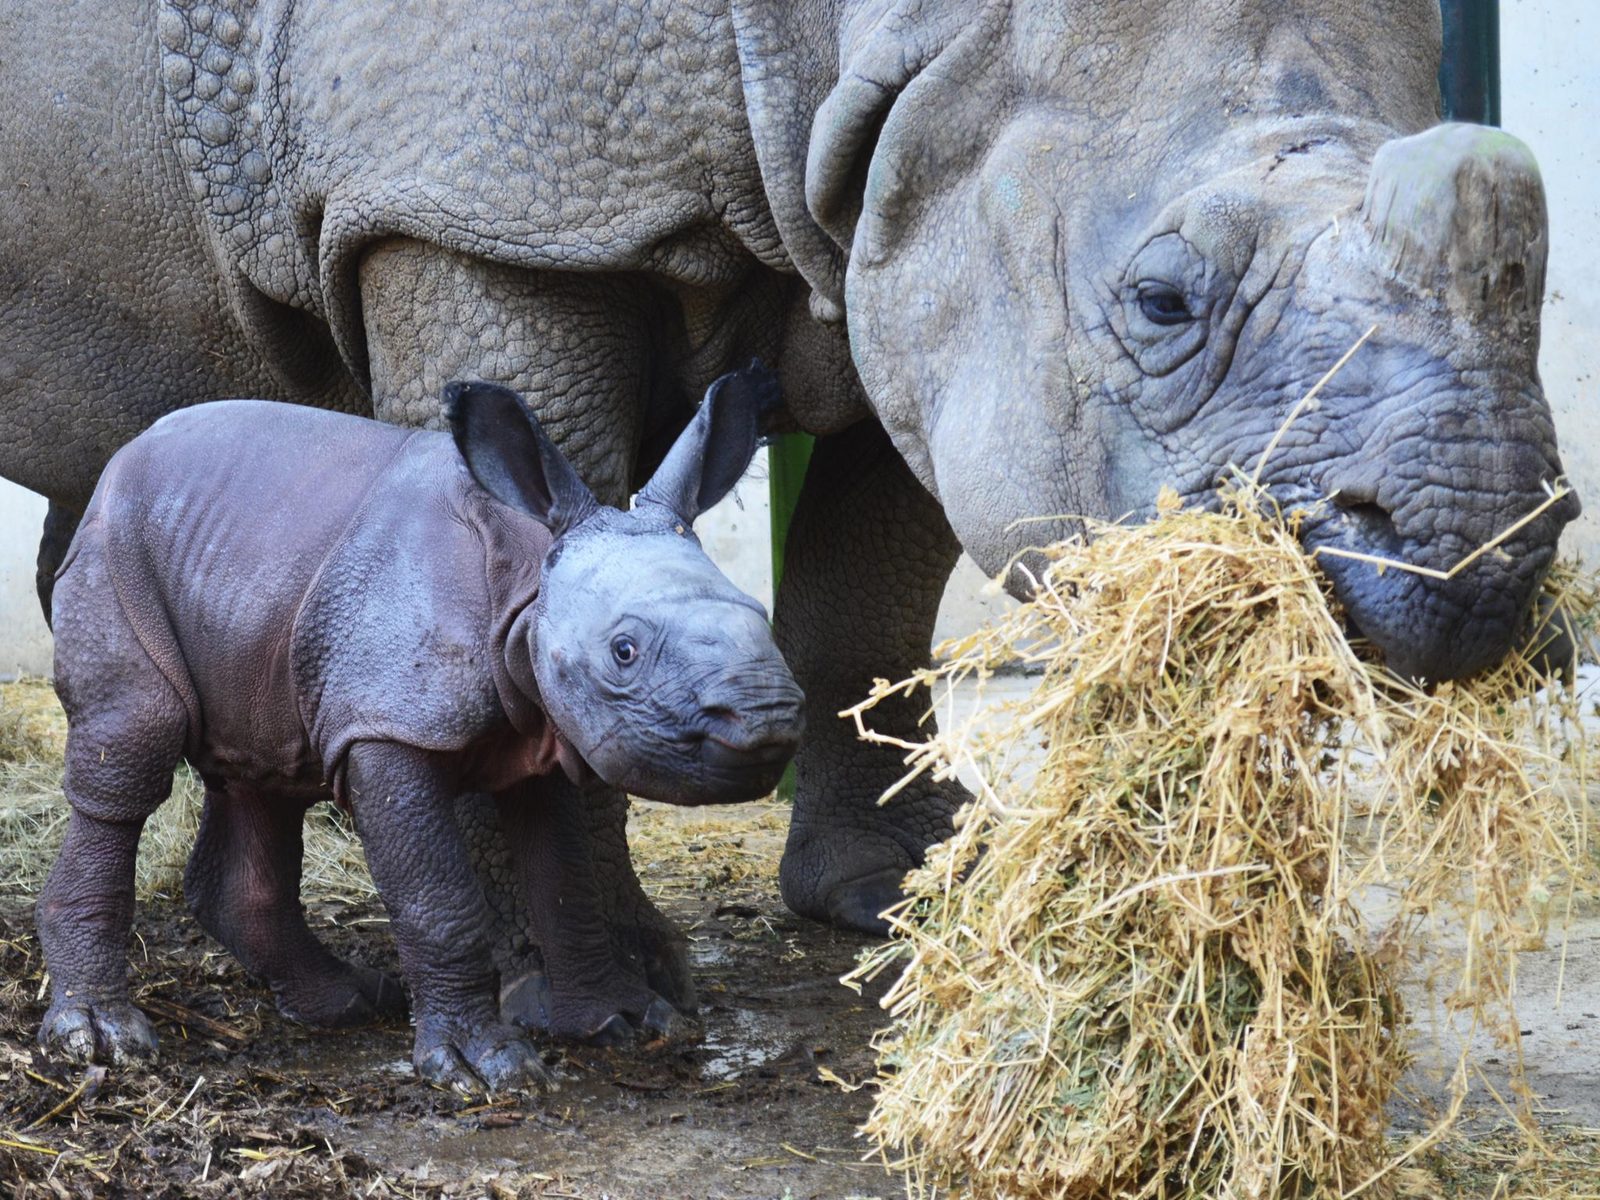 Mother rhino with baby rhino in Terra Natura Benidorm